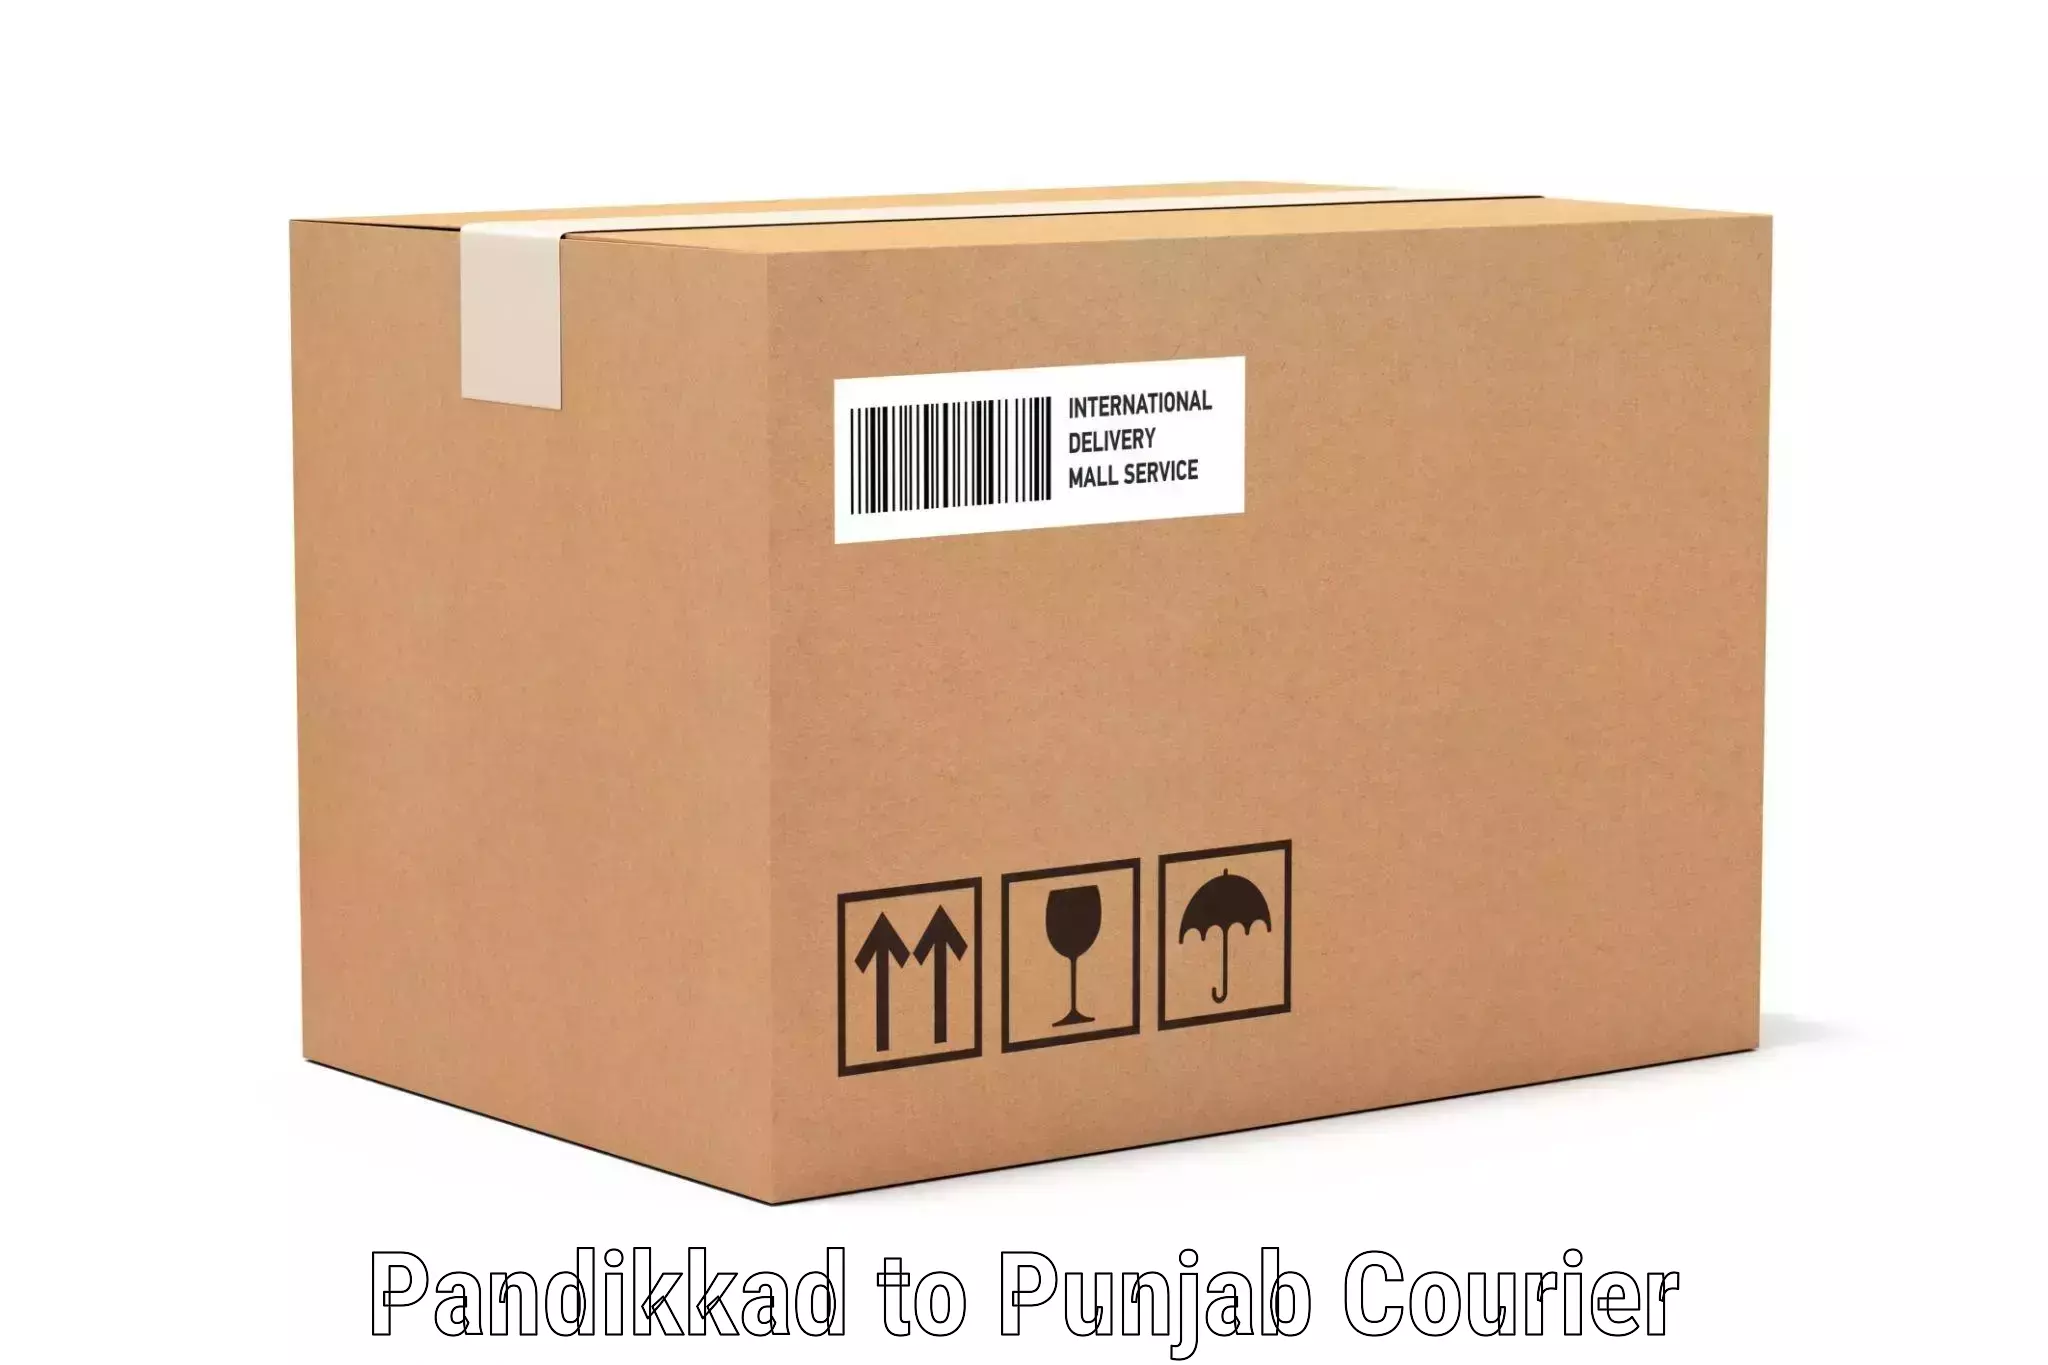 Baggage relocation service Pandikkad to Punjab